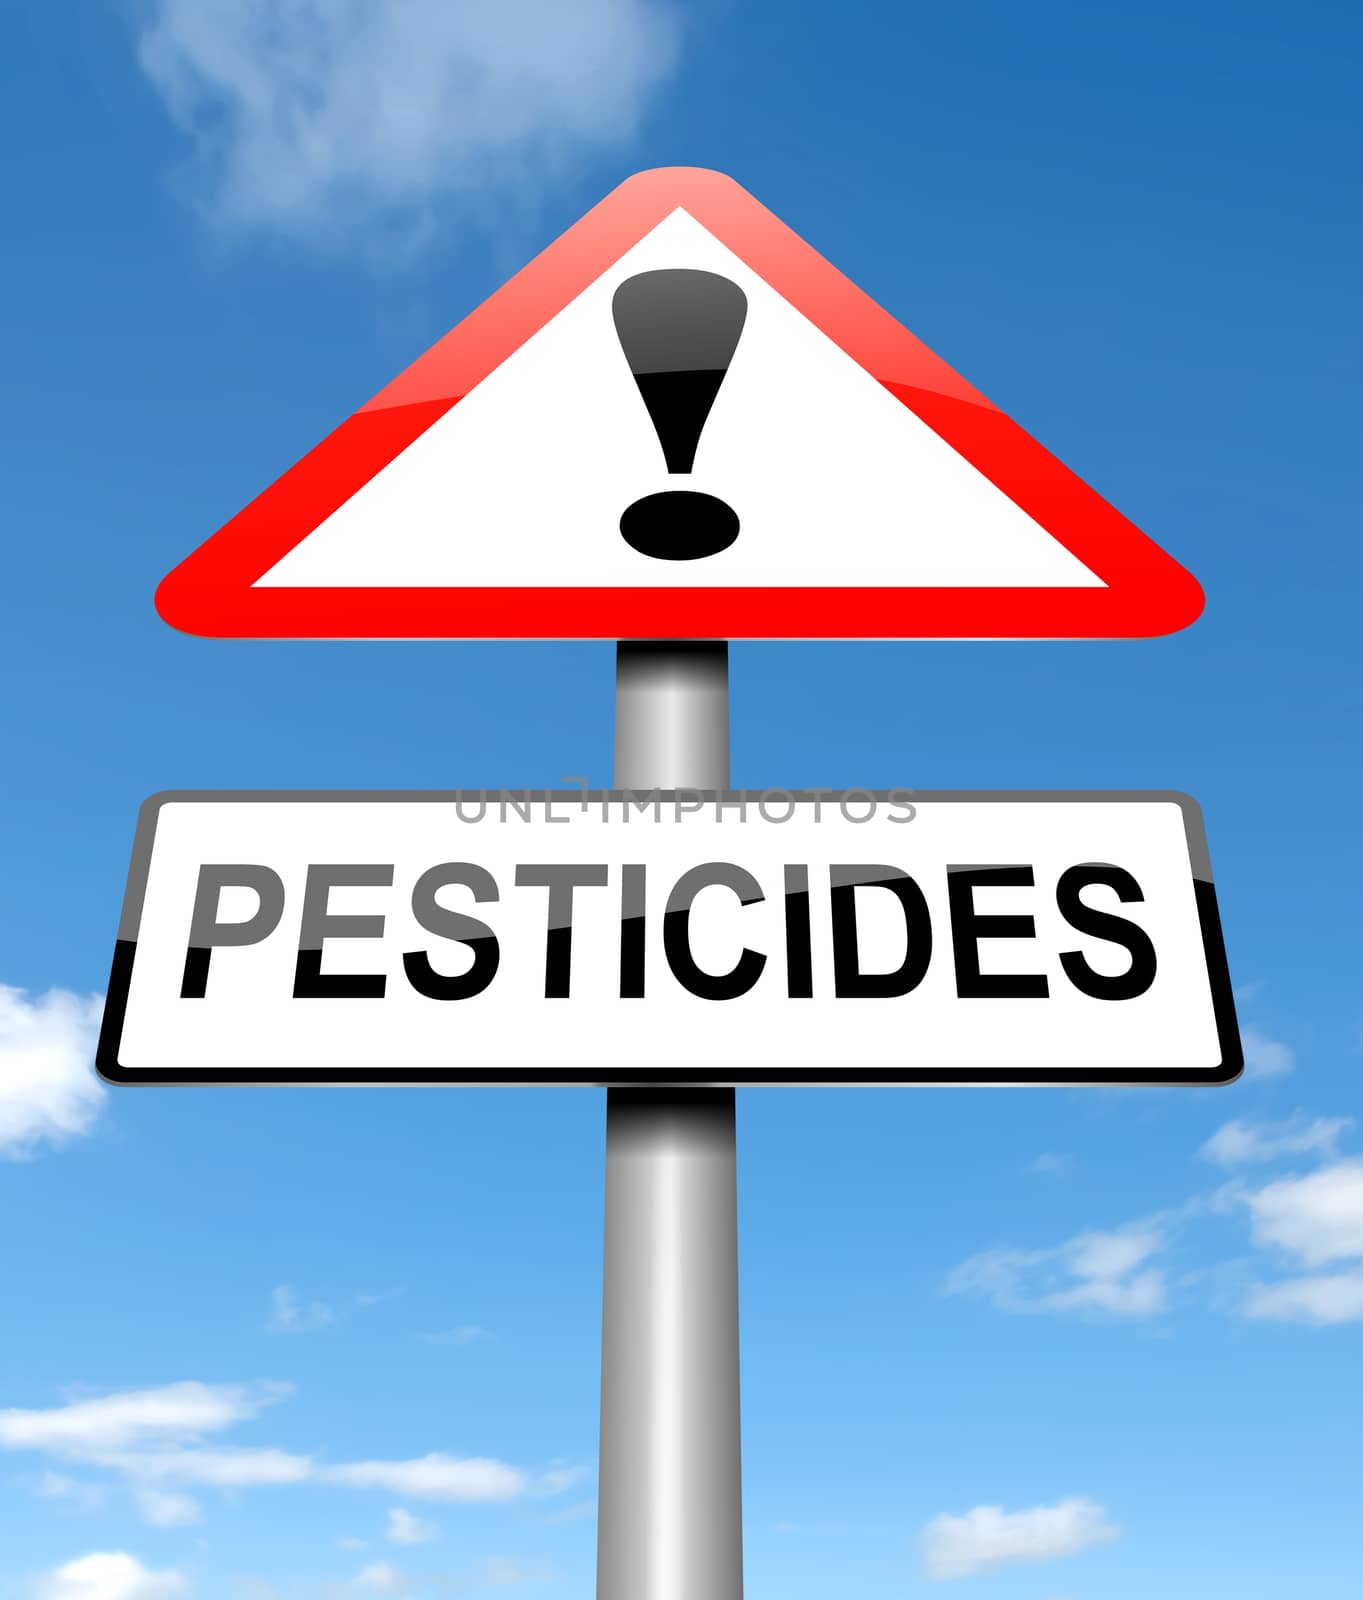 Pesticides concept. by 72soul